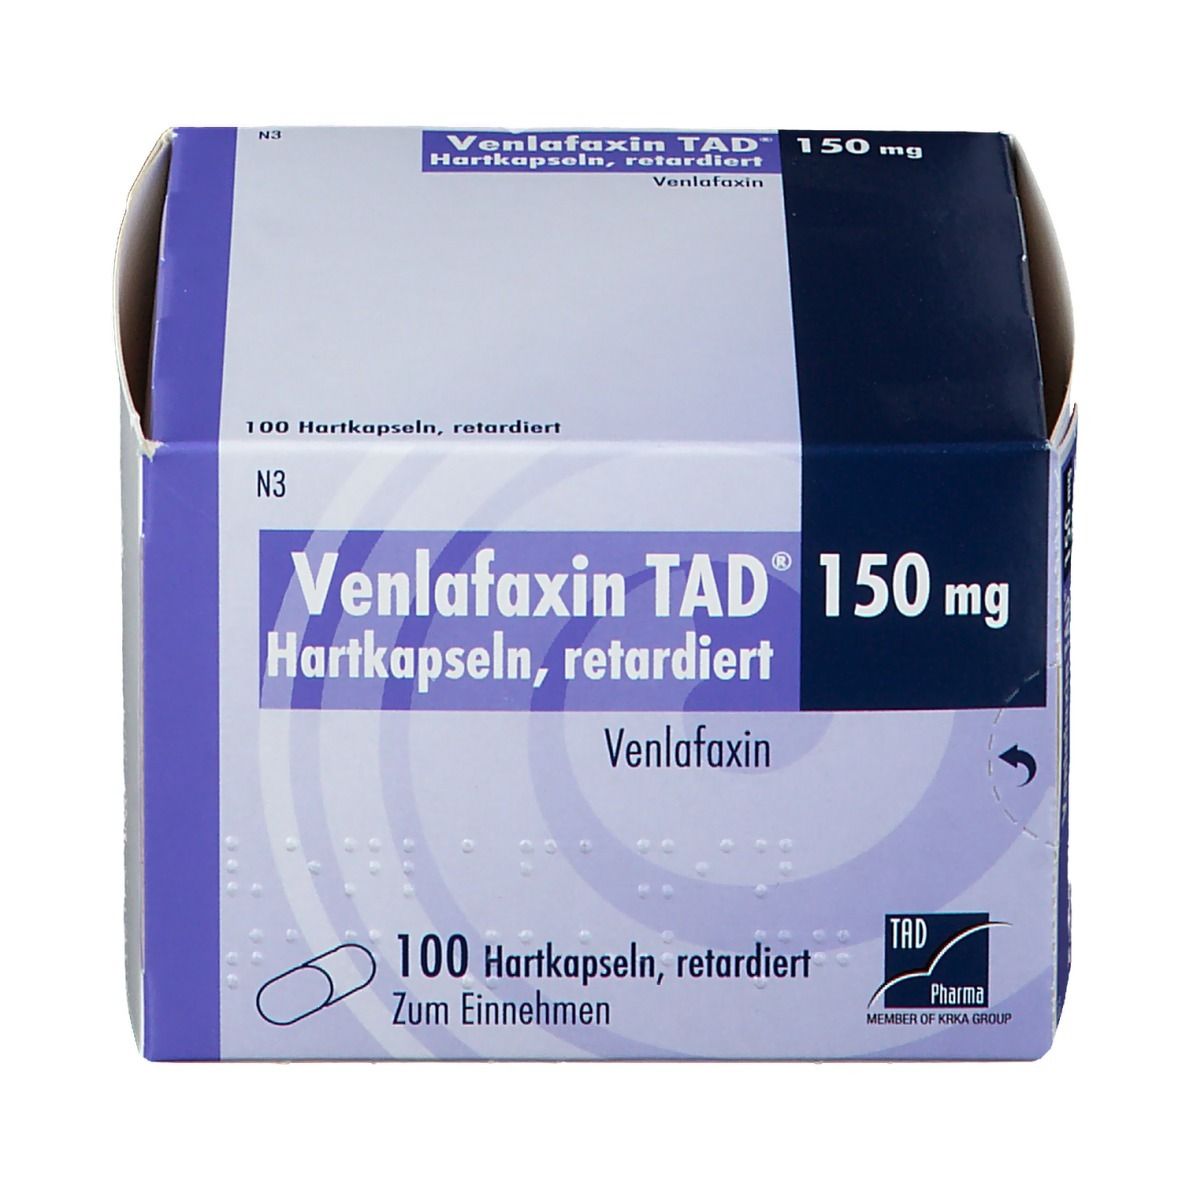 Venlafaxin TAD® 150 mg